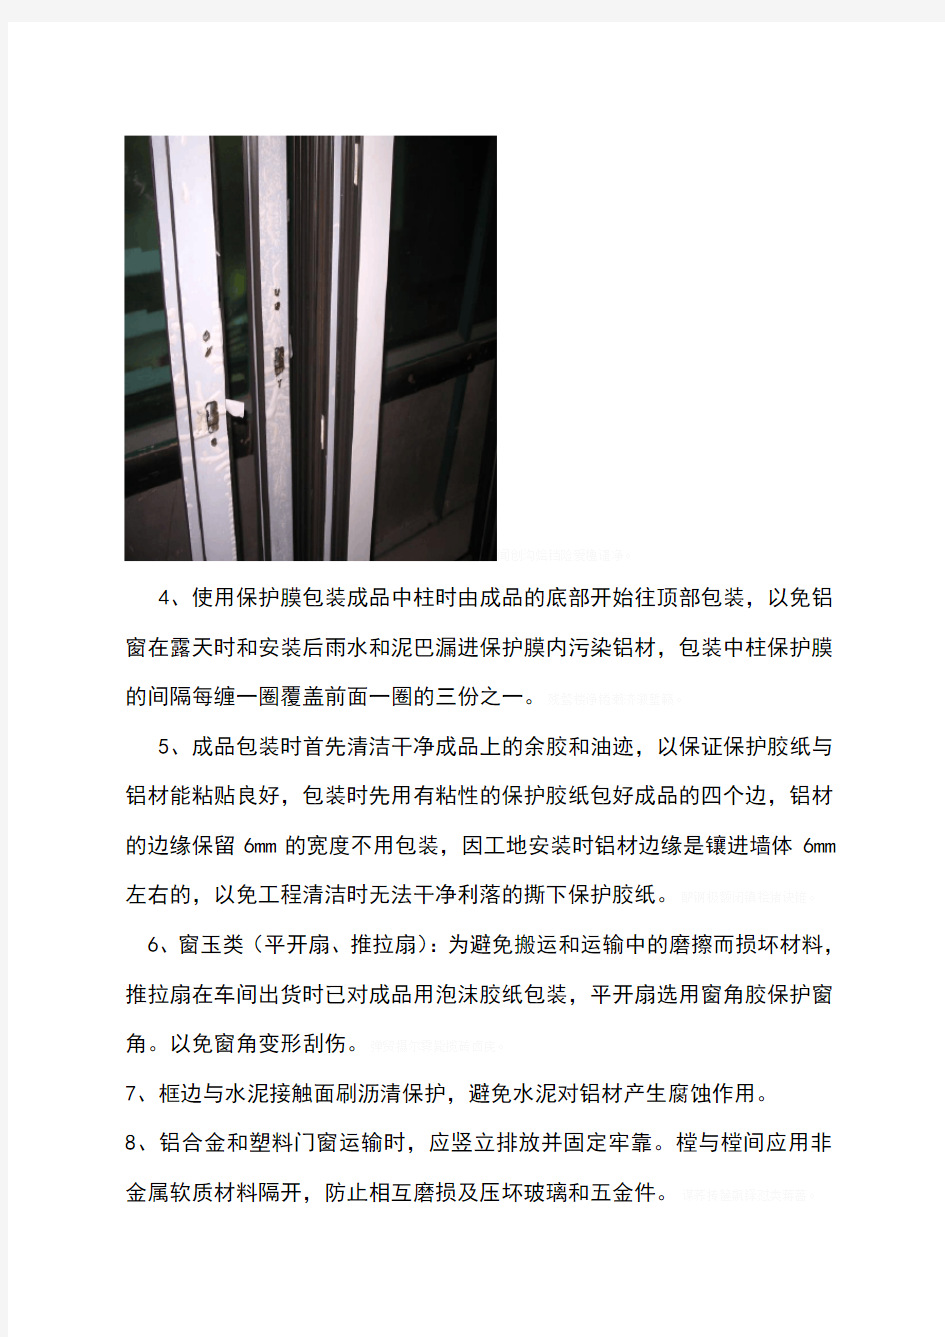 门窗工程成品保护方案 (1)